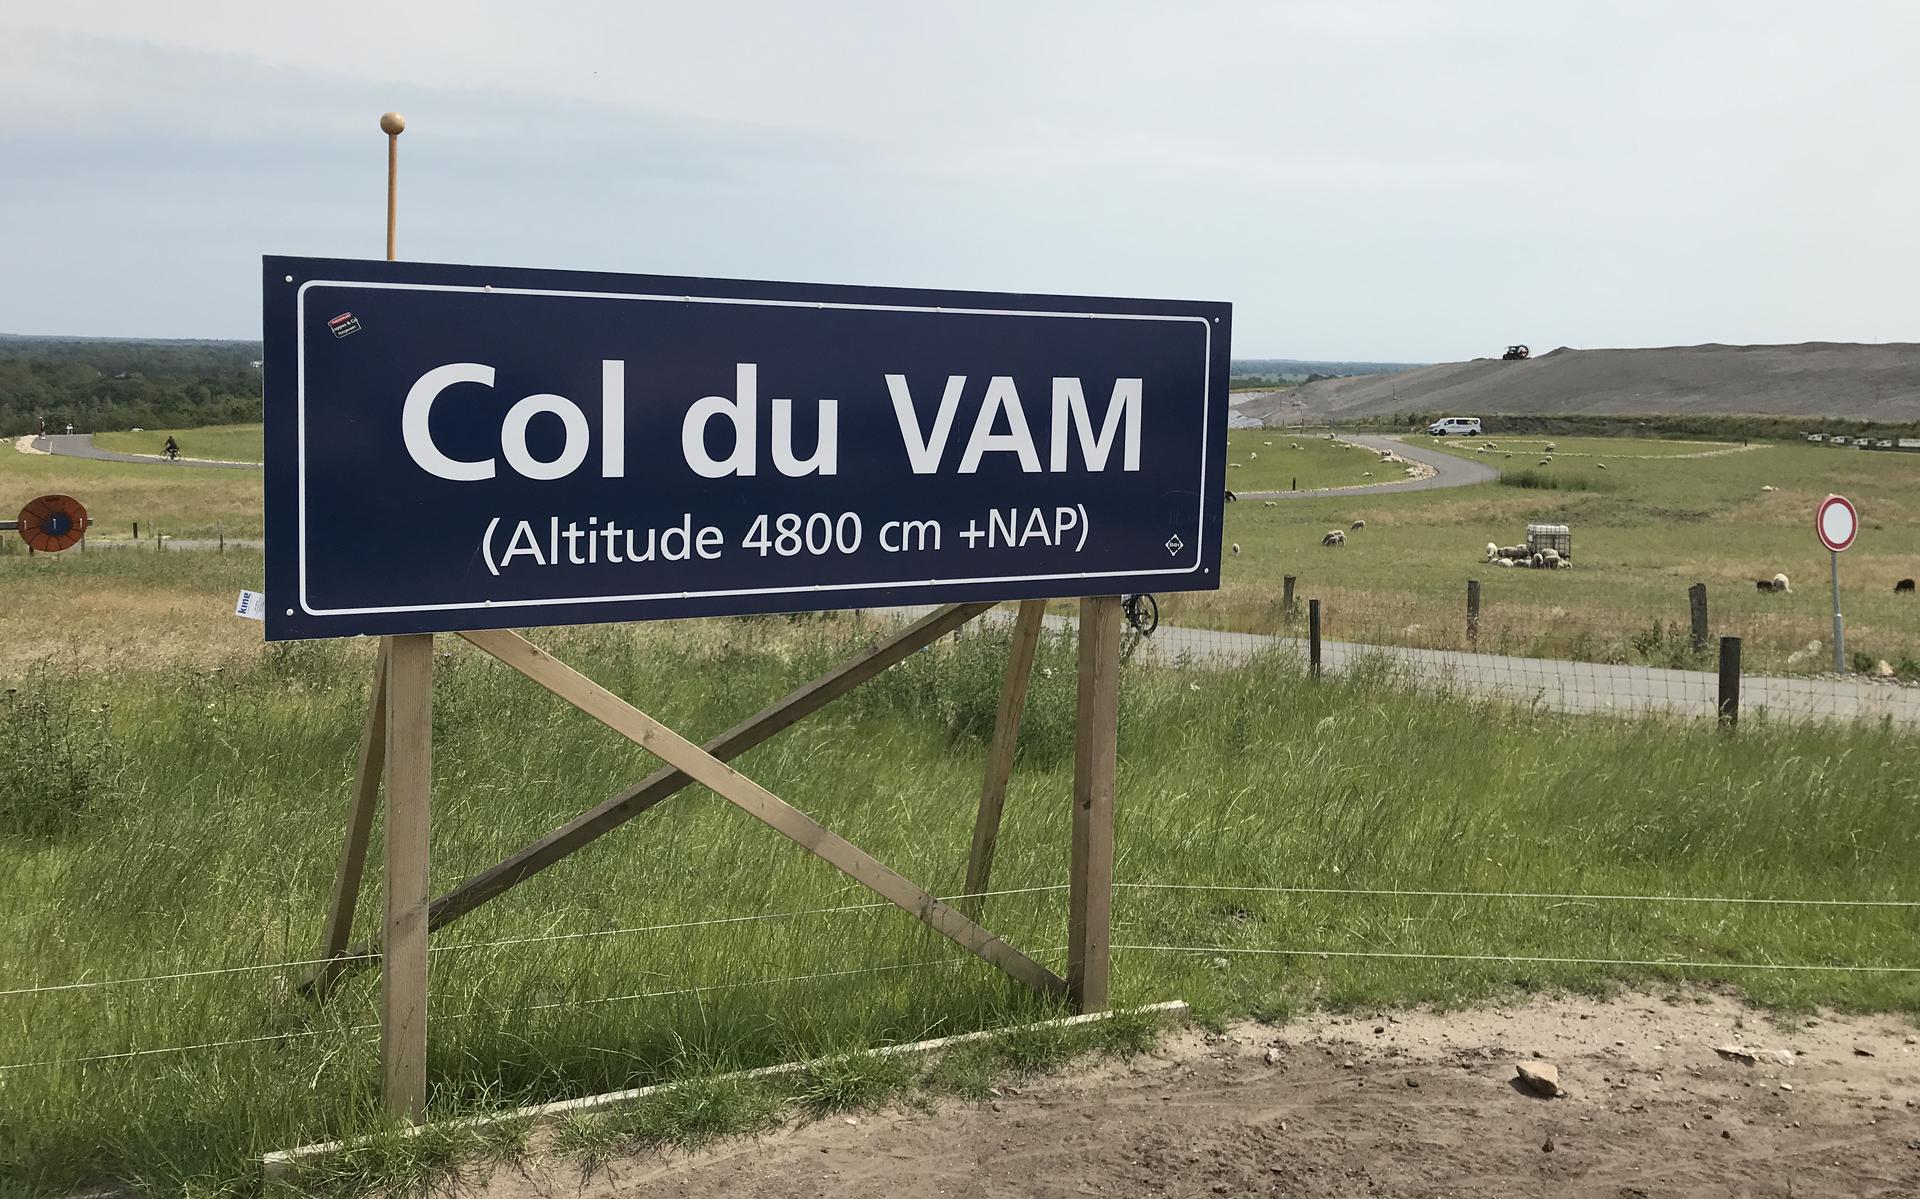 De top van de Col du VAM.